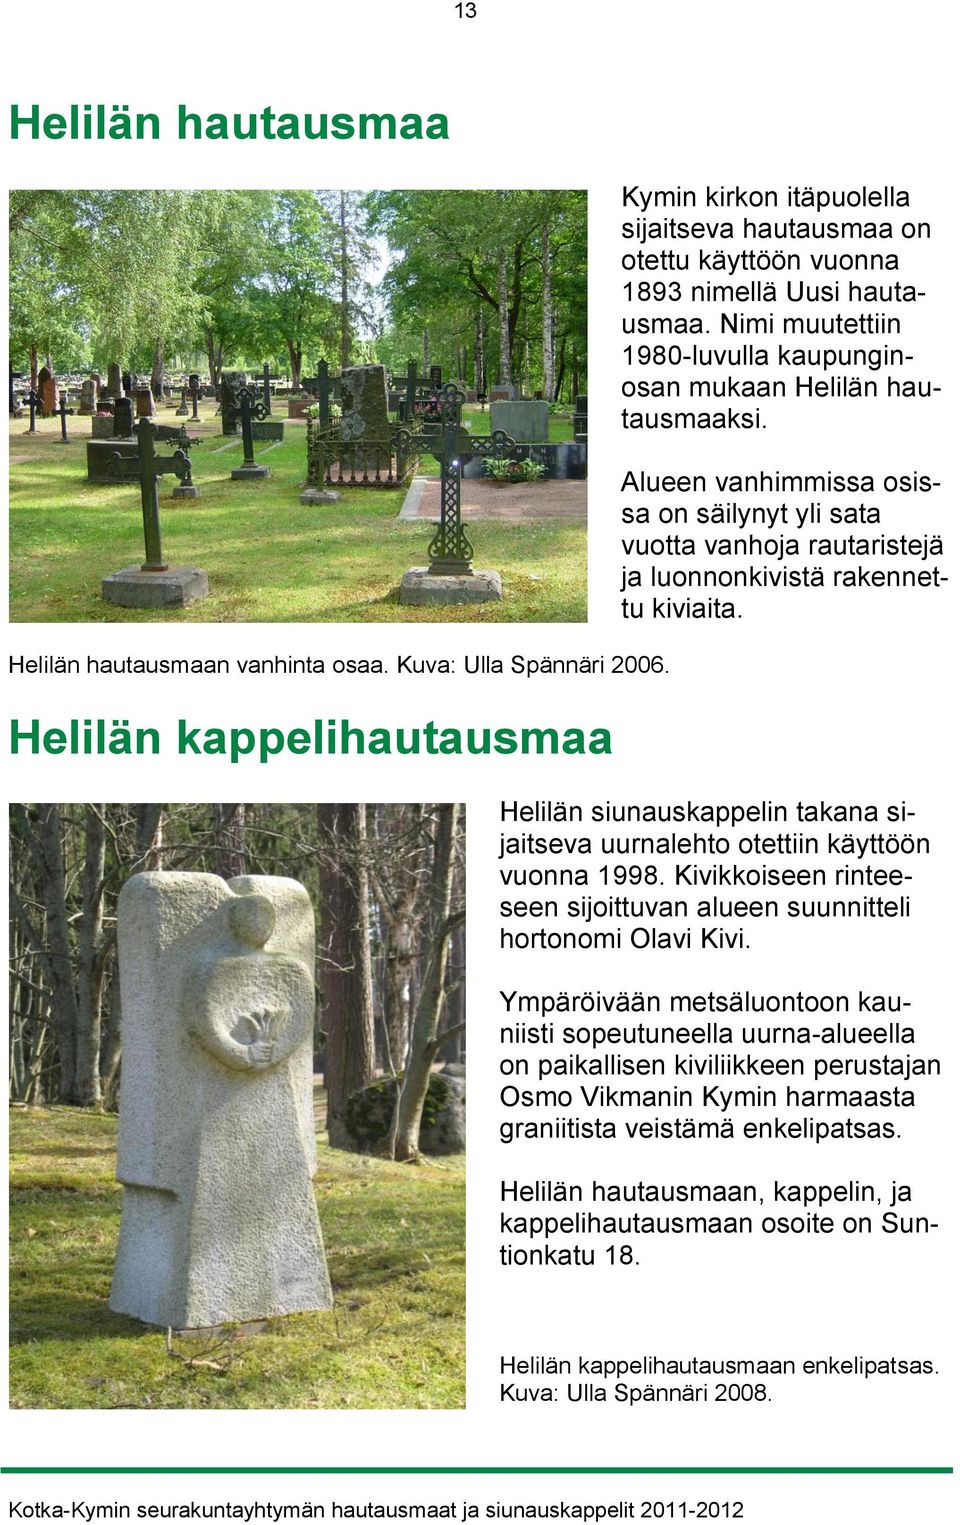 Nimi muutettiin 1980-luvulla kaupunginosan mukaan Helilän hautausmaaksi. Alueen vanhimmissa osissa on säilynyt yli sata vuotta vanhoja rautaristejä ja luonnonkivistä rakennettu kiviaita.